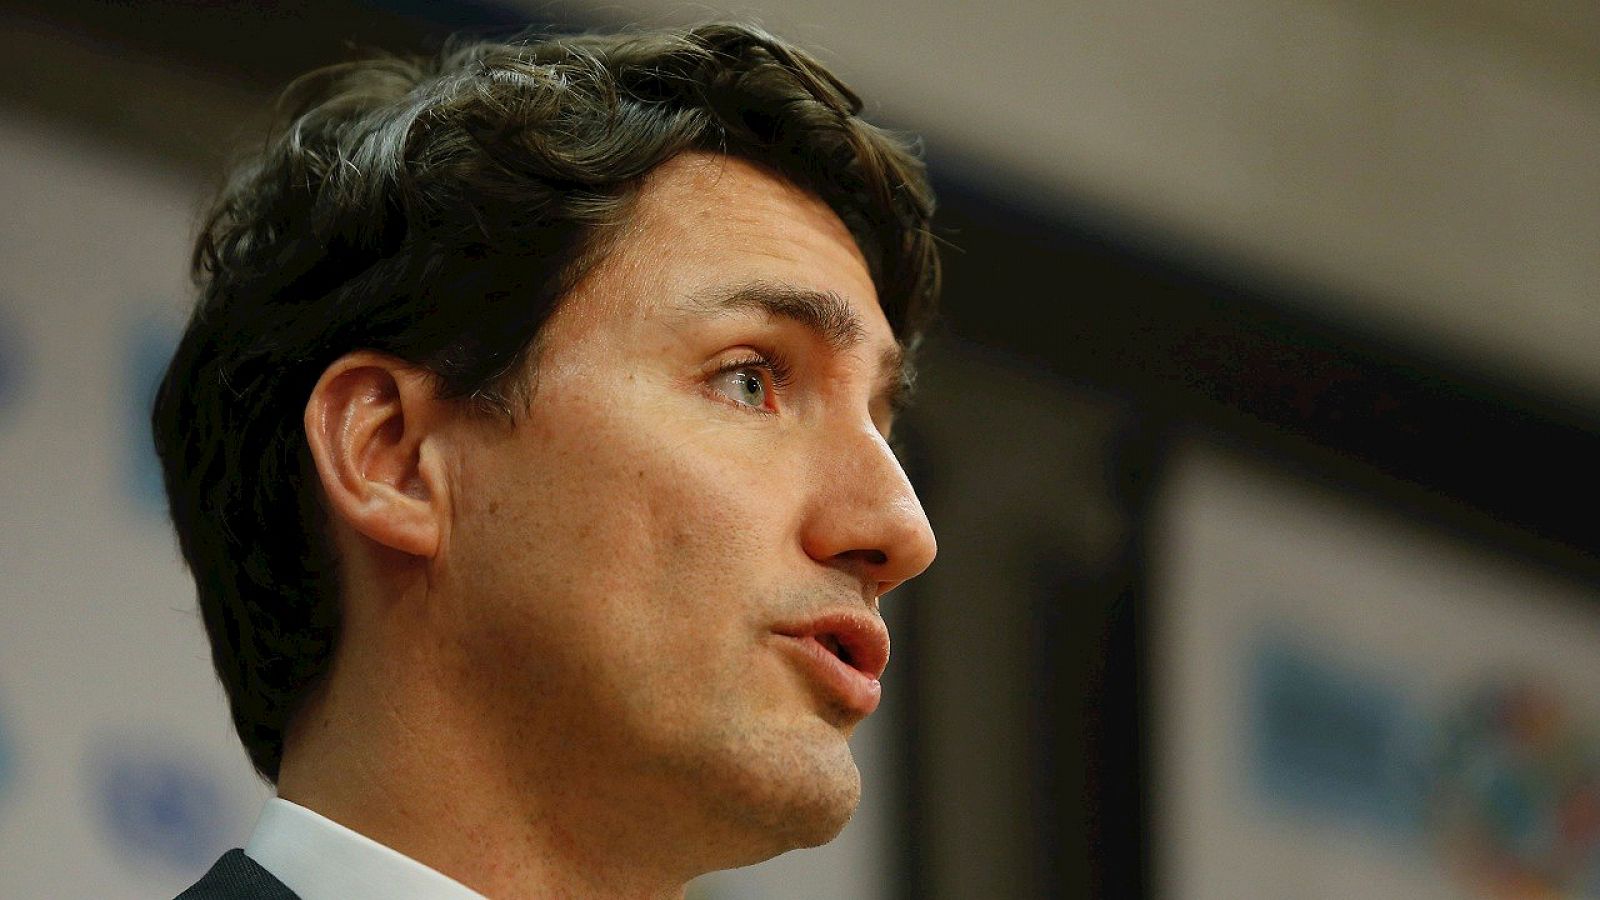 El primer ministro de Canadá, Justin Trudeau, en una imagen de archivo. AFP PHOTO / KENA BETANCUR